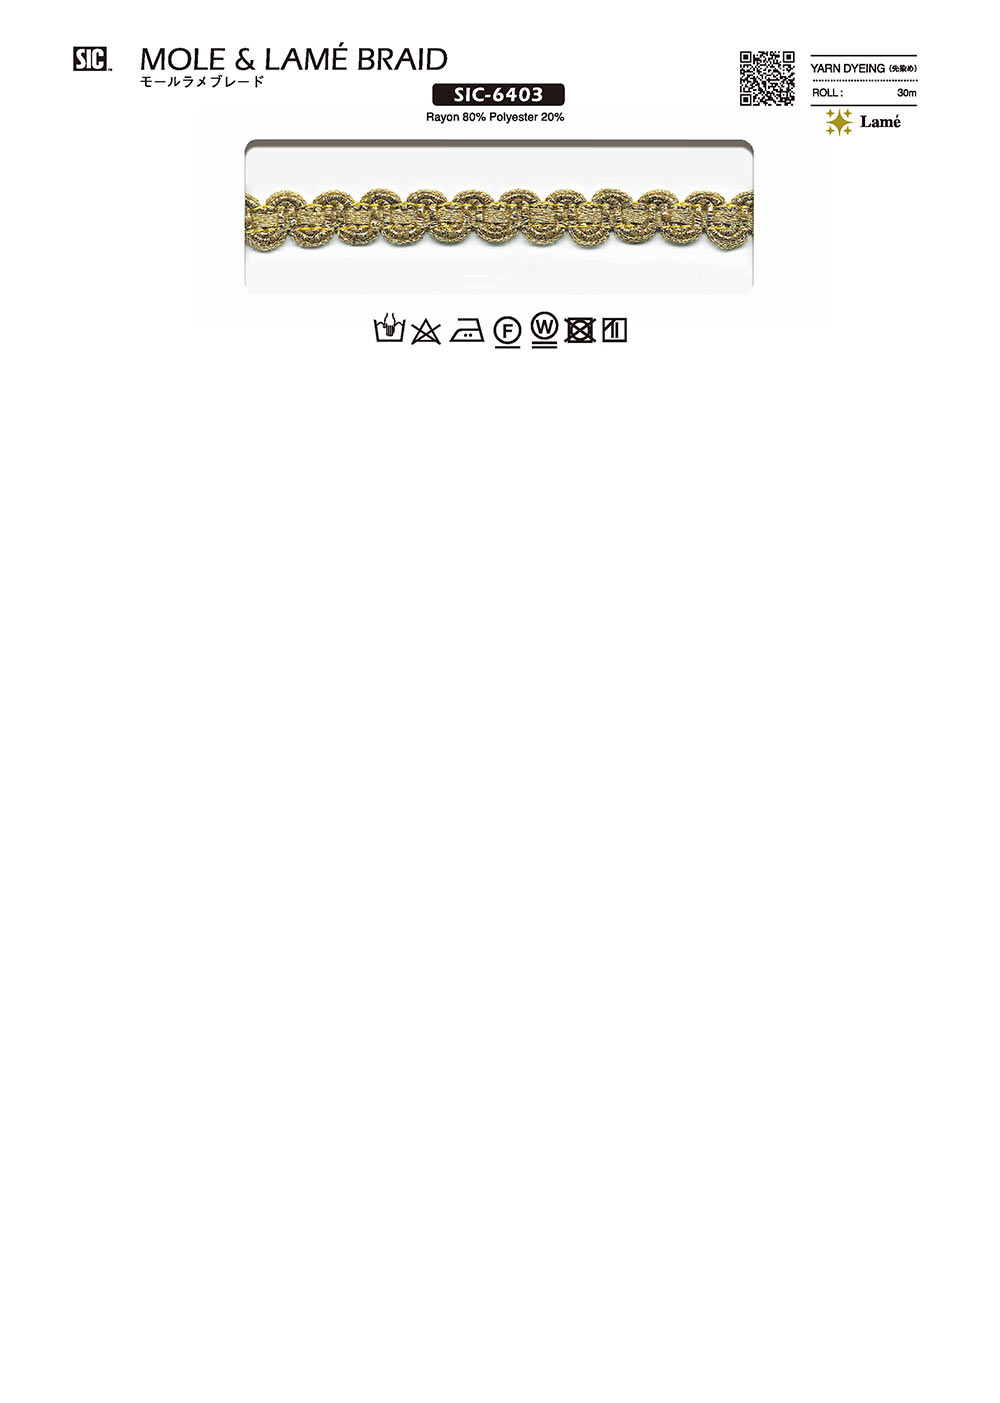 SIC-6403 색상 블레이드[리본 테이프 코드] SHINDO(SIC)